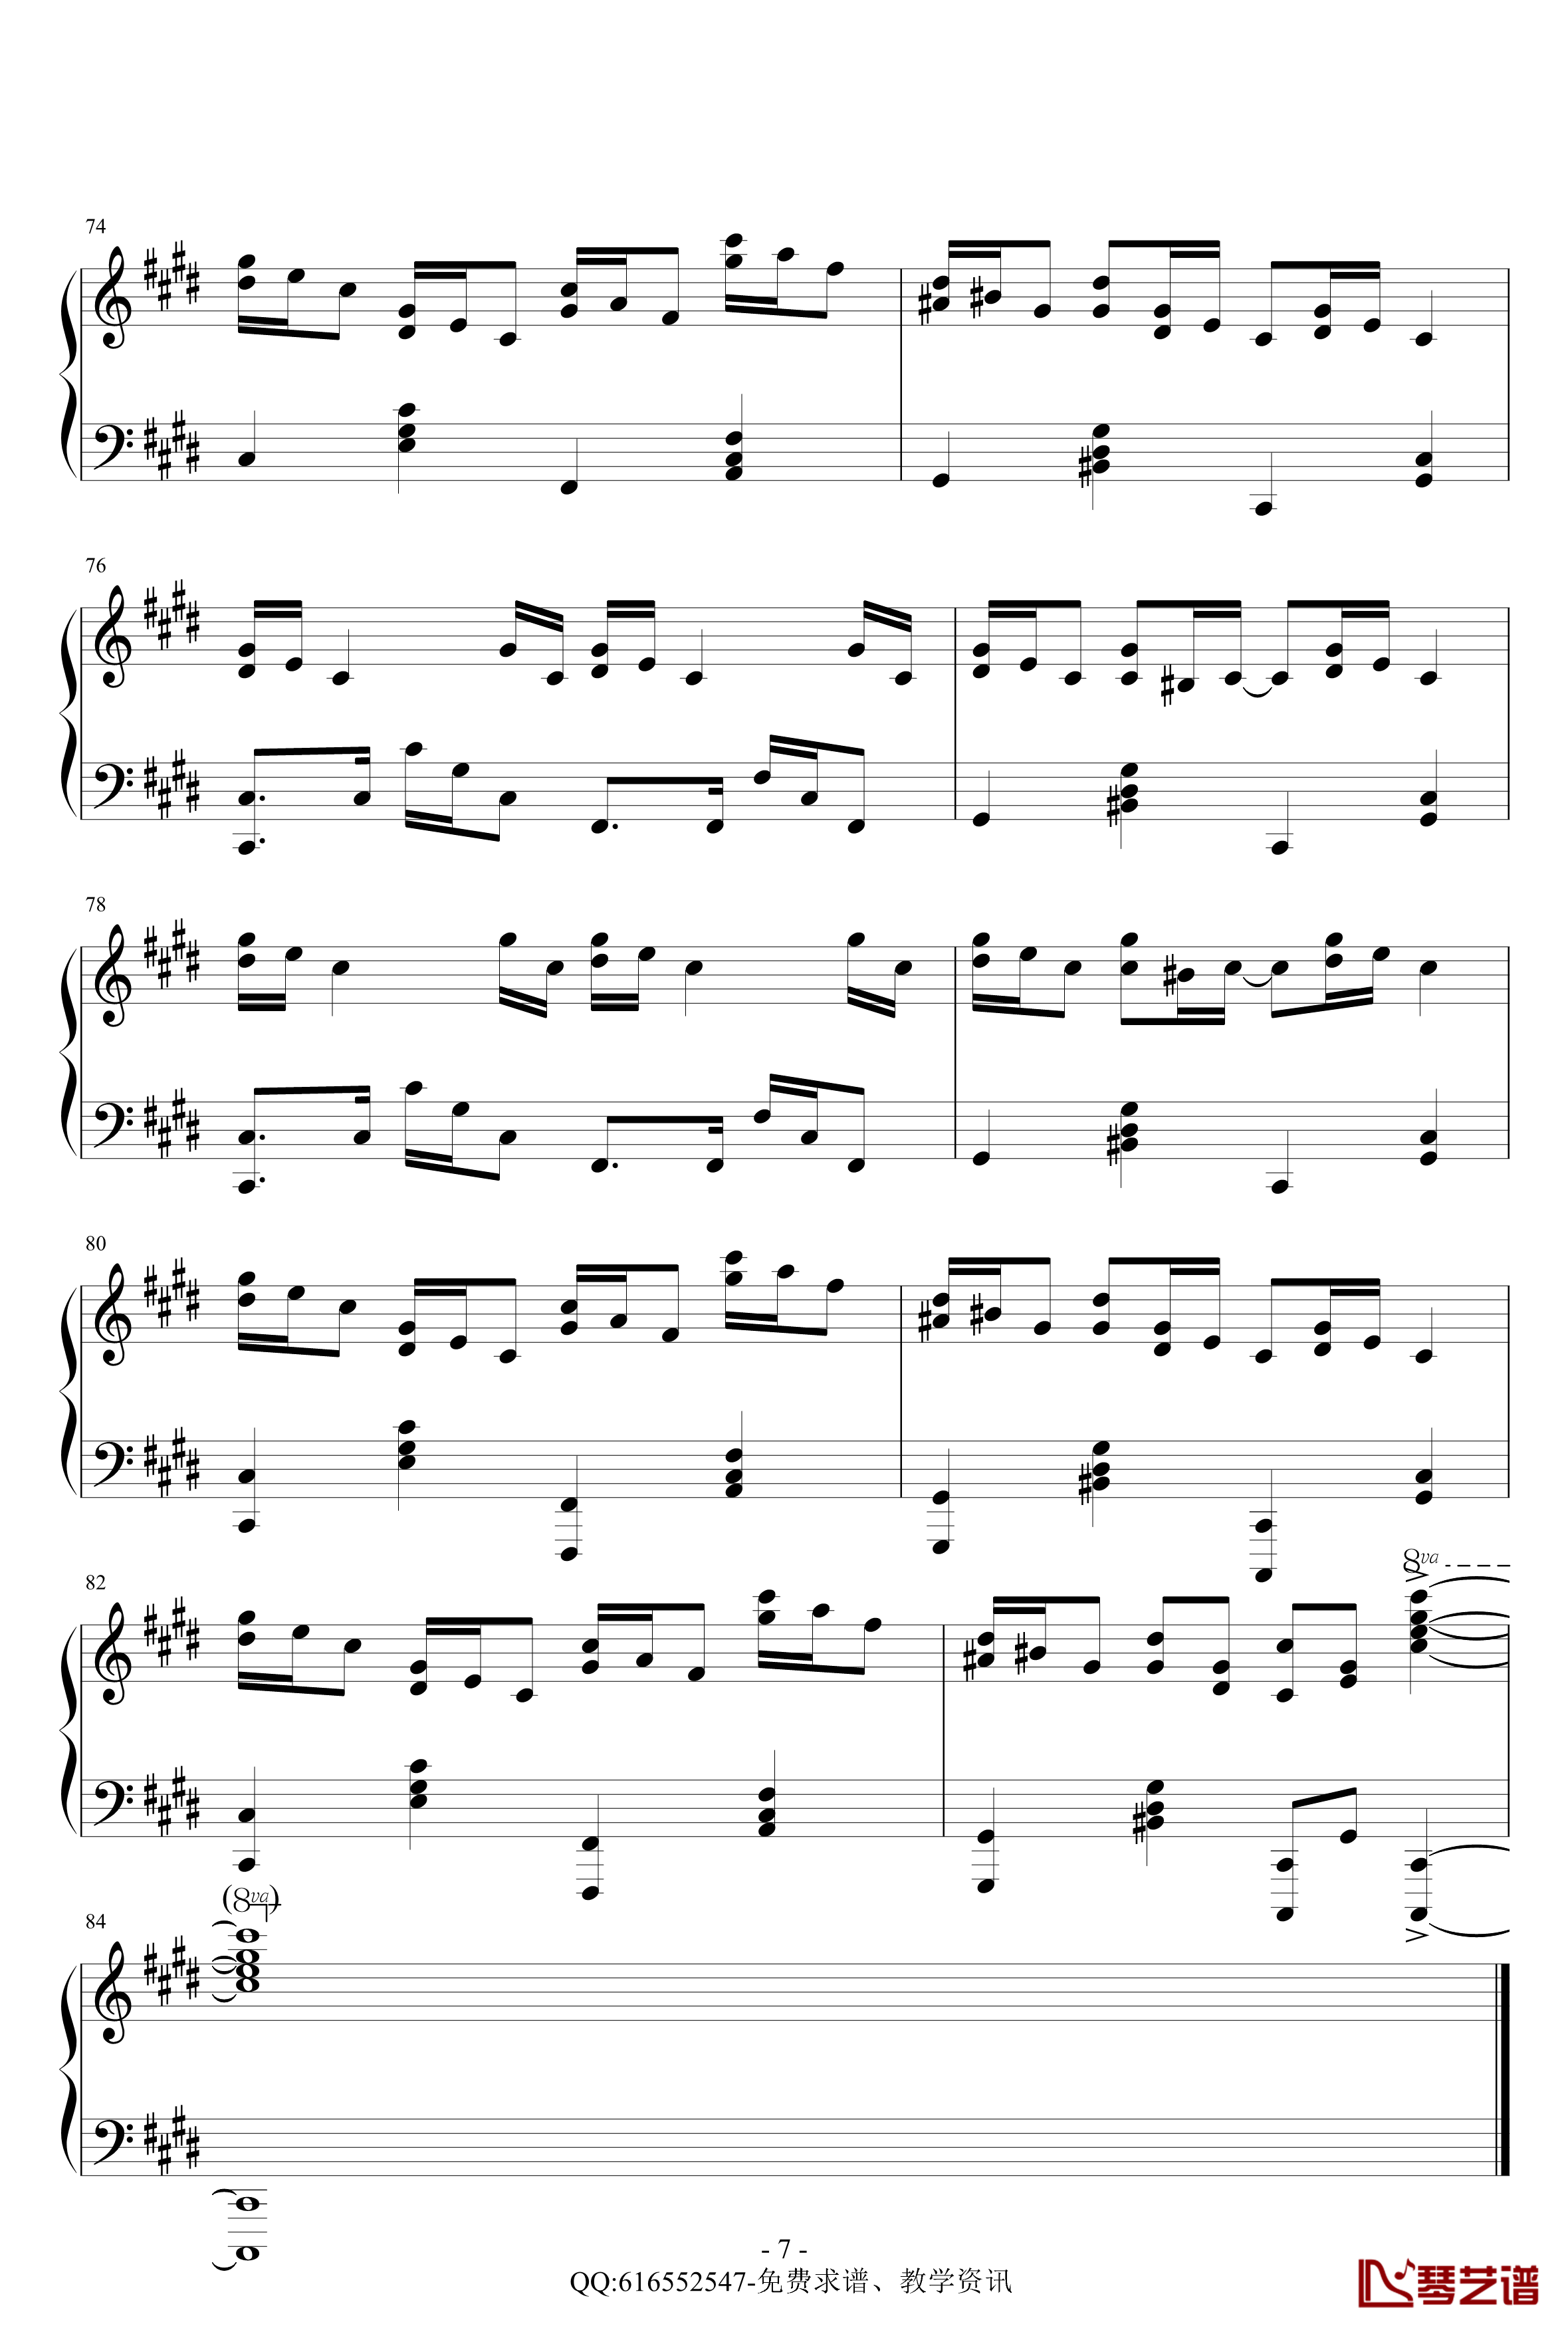 克罗地亚狂想曲钢琴谱-精致版-金龙鱼170427-马克西姆-Maksim·Mrvica7